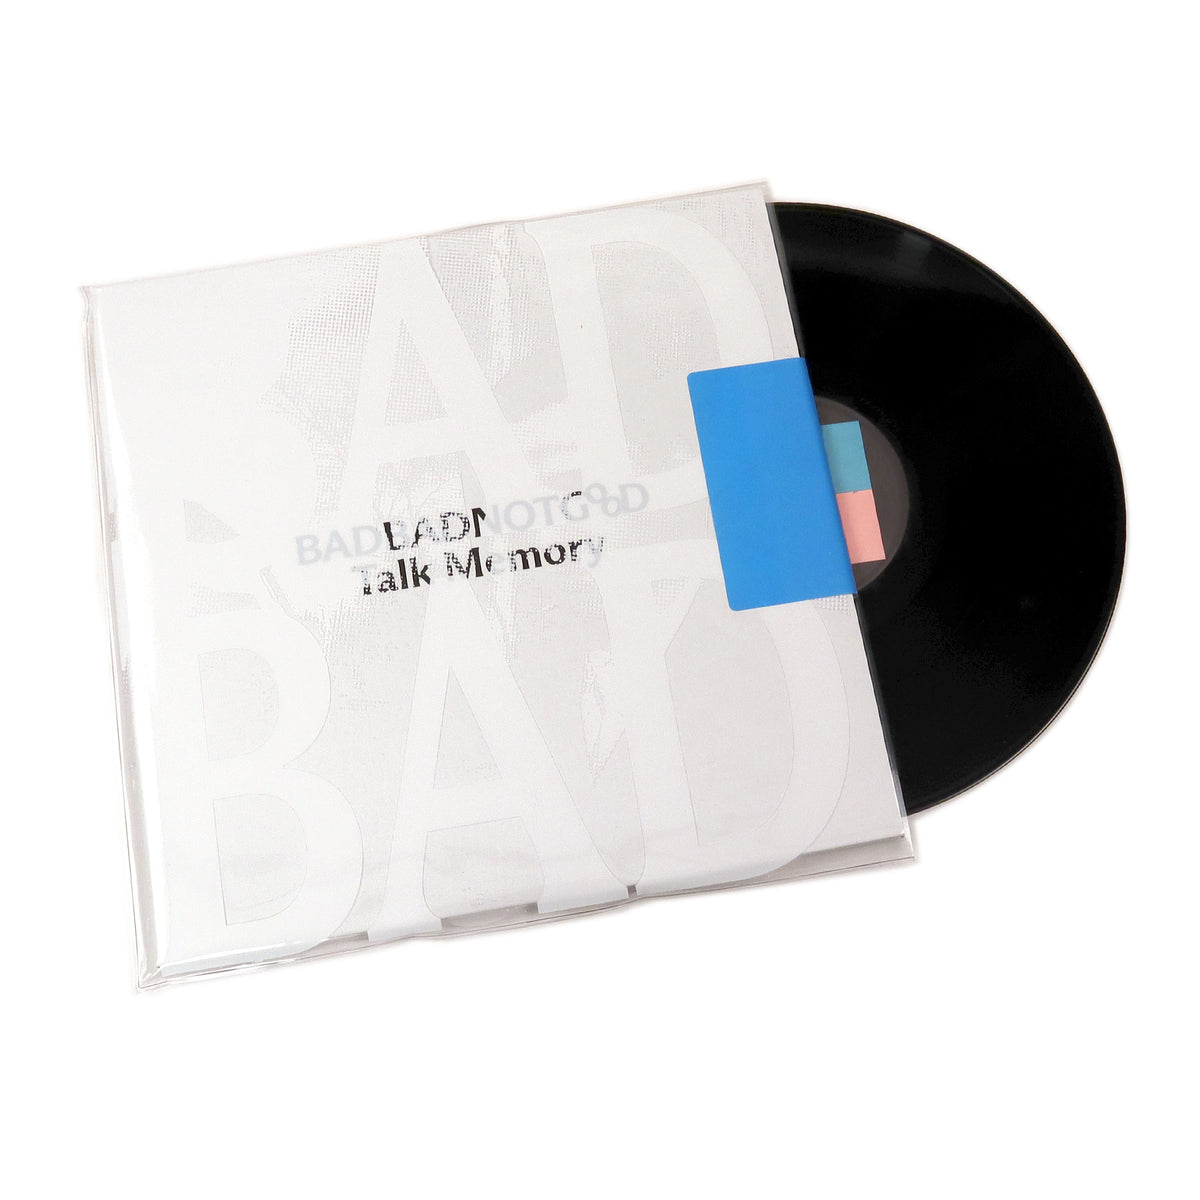 Talk Memory - Badbadnotgood - Vinyl